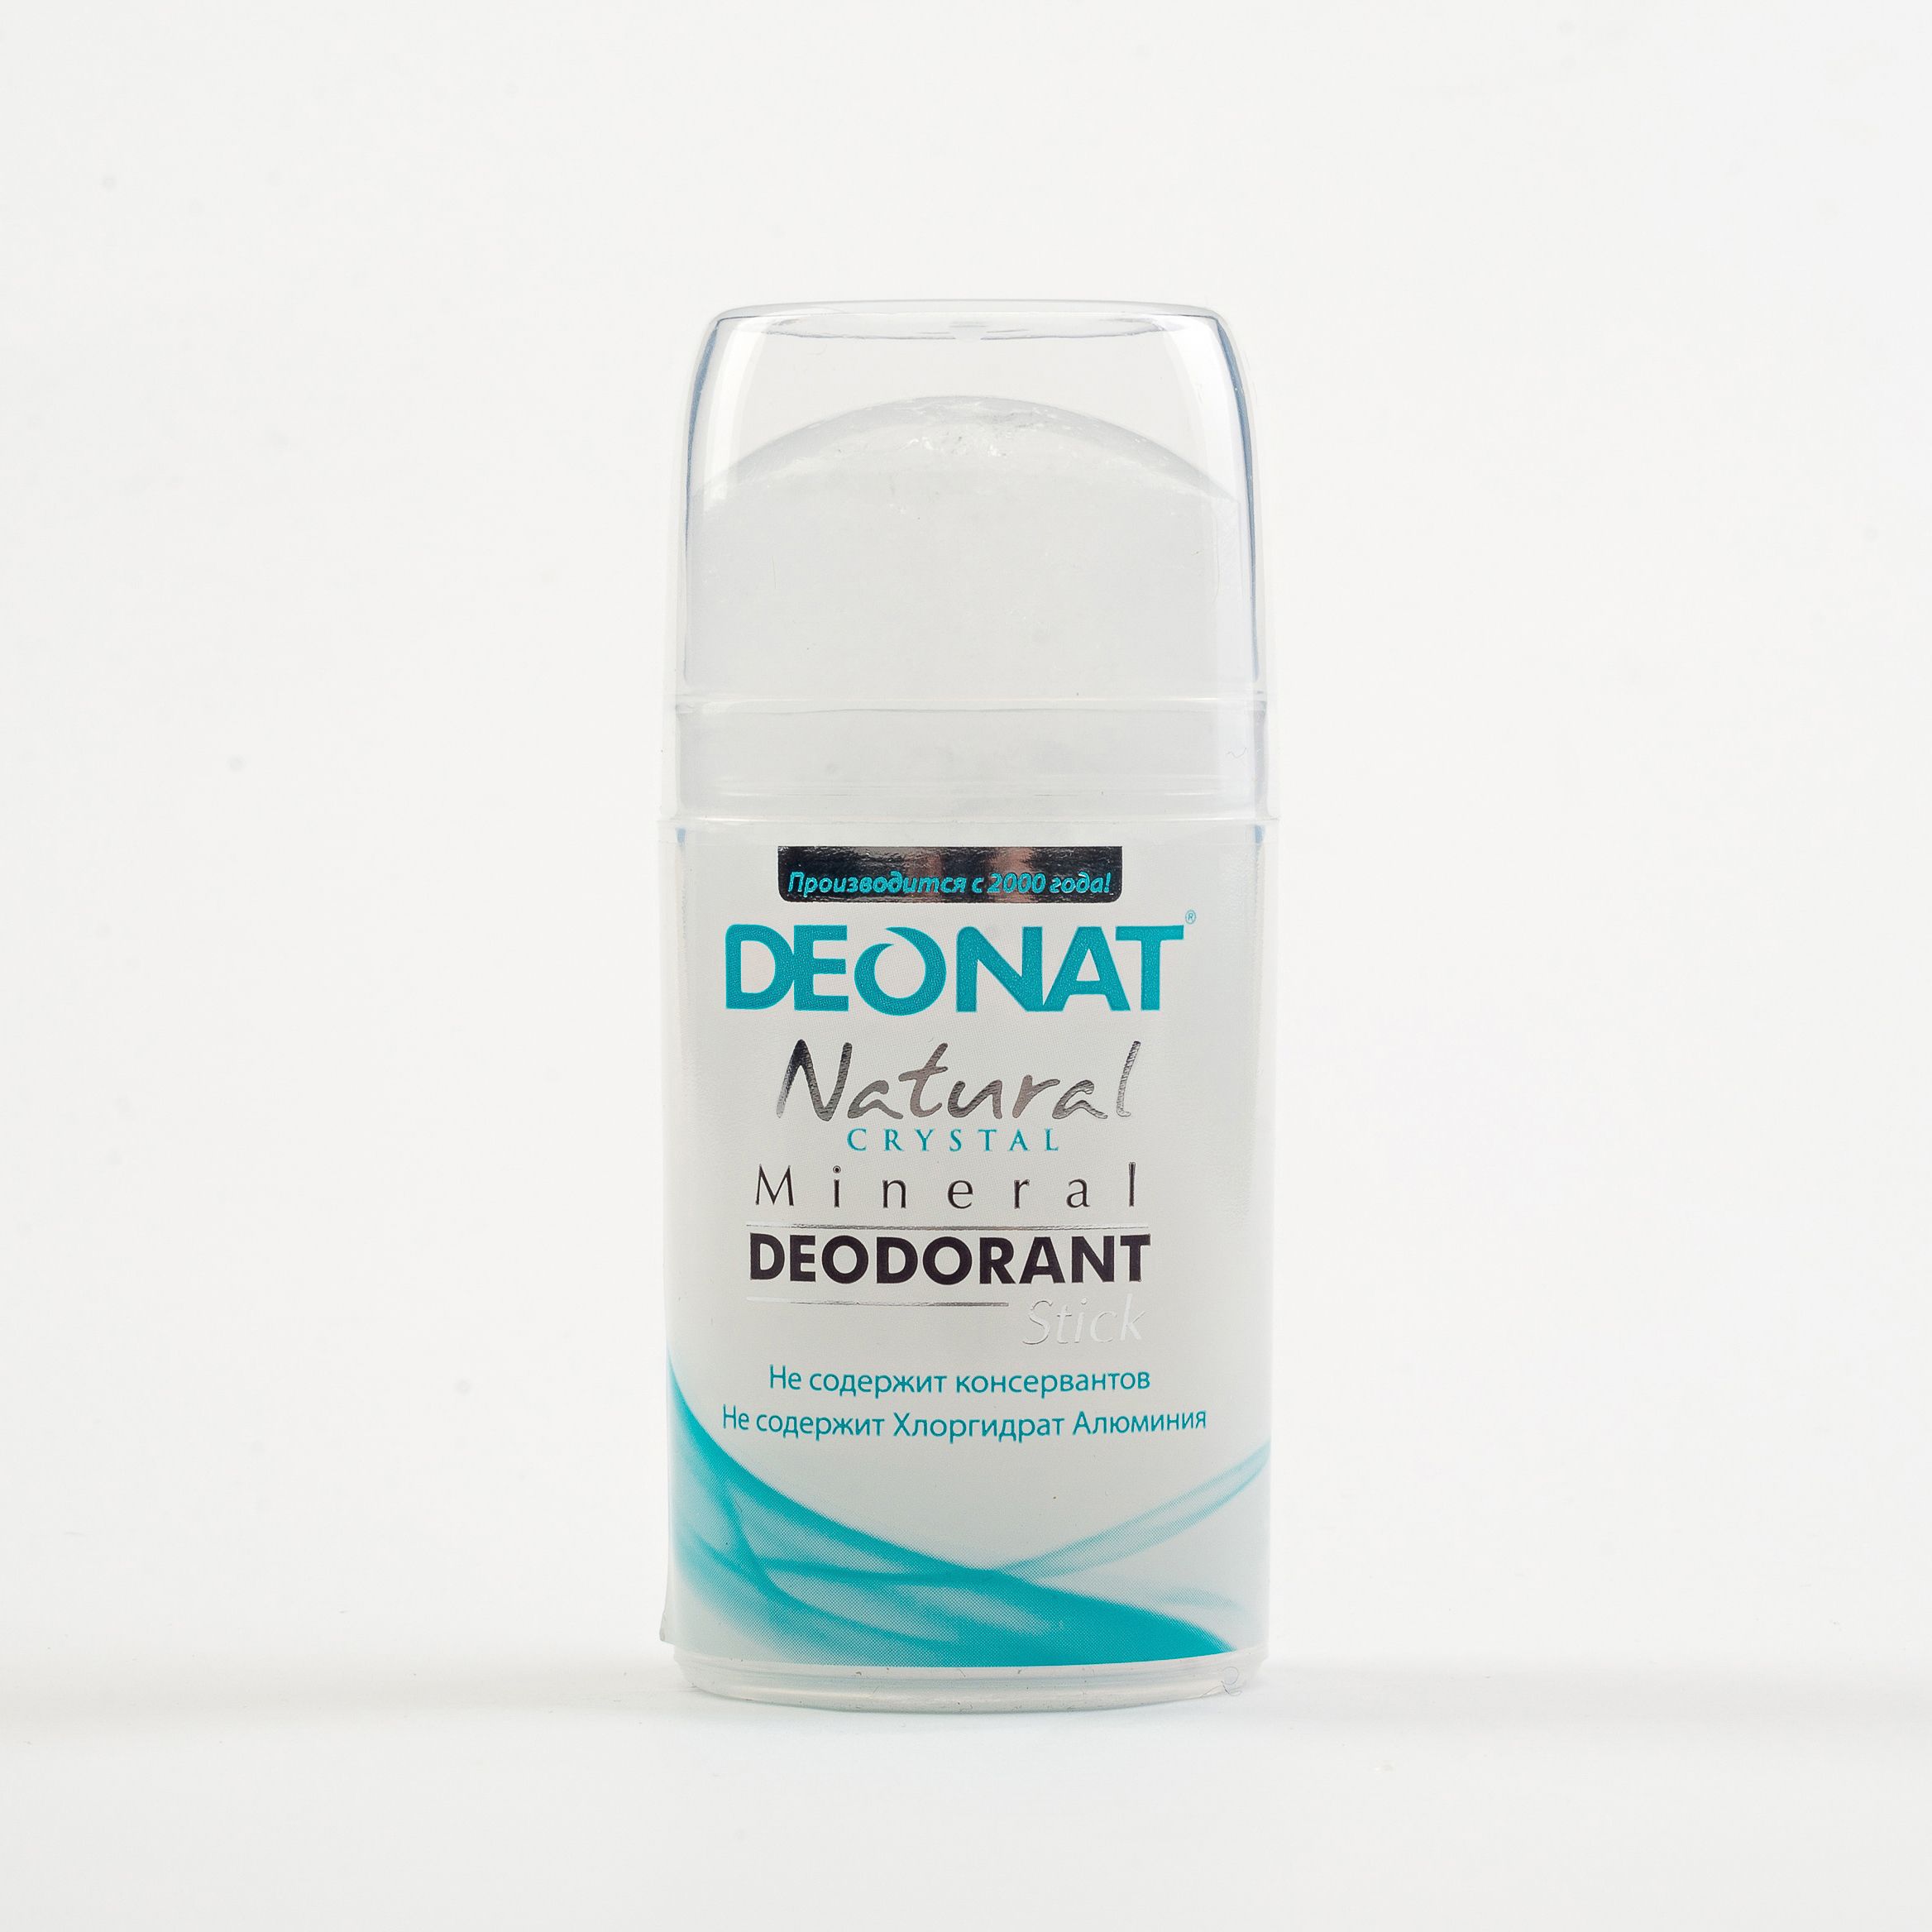 Дезодорант-Кристалл DEONAT. Дезодорант-Кристалл «ДЕОНАТ», стик цельный. DEONAT дезодорант natural, Кристалл. ДЕОНАТ стик минеральный дезодорант. Кристалл без запаха